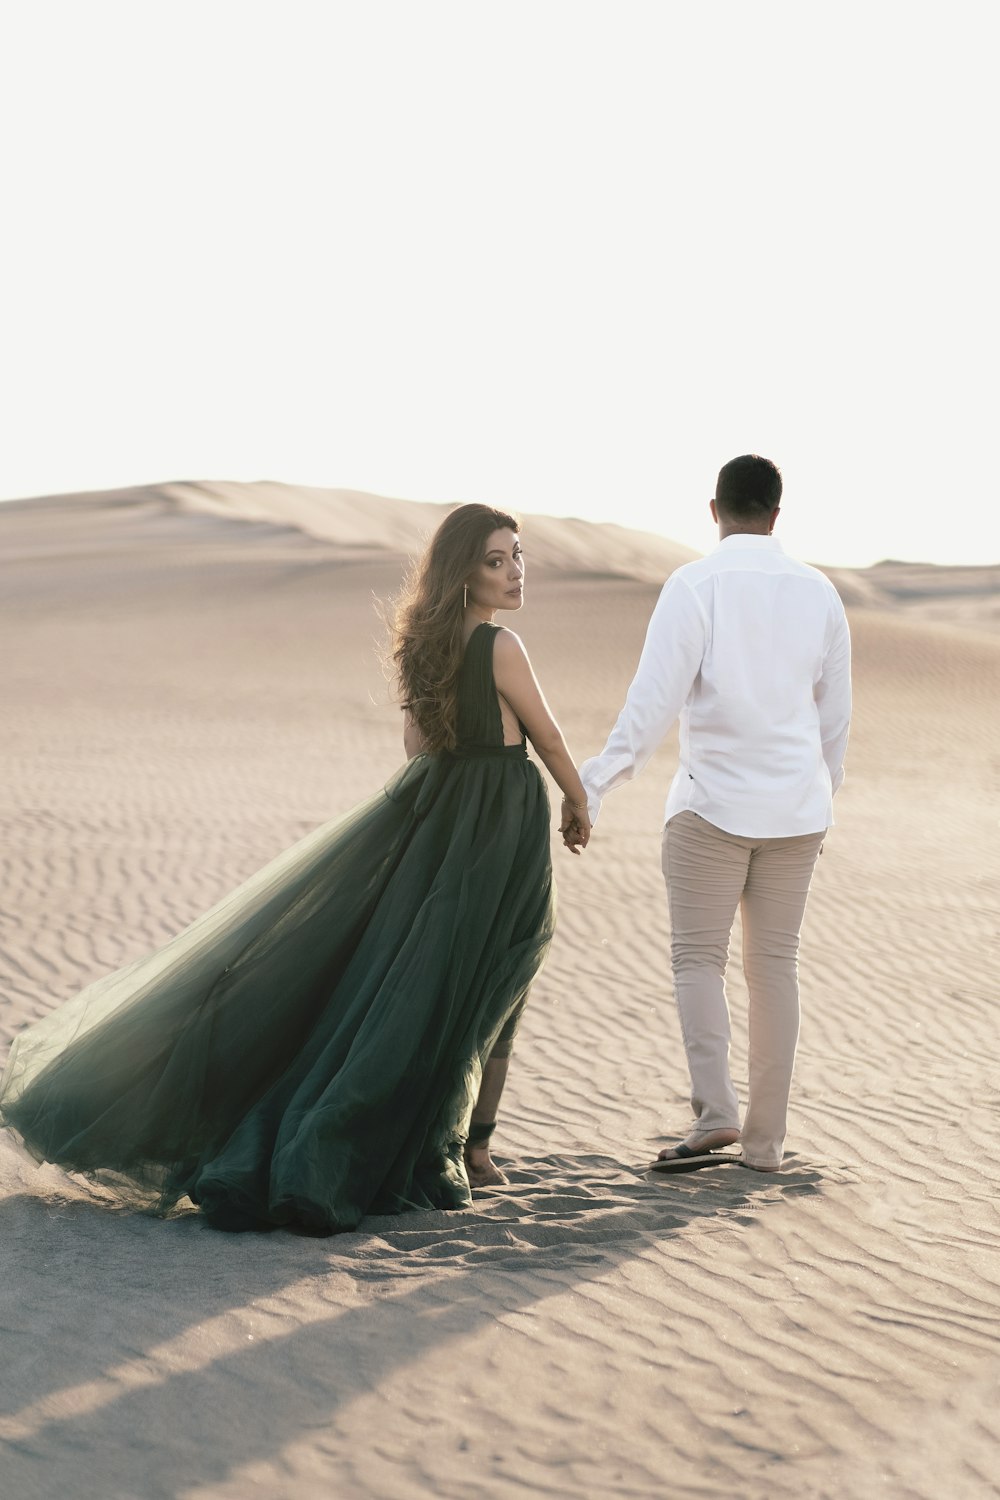 Mann und Frau, die tagsüber Händchen halten, während sie auf Sand spazieren gehen